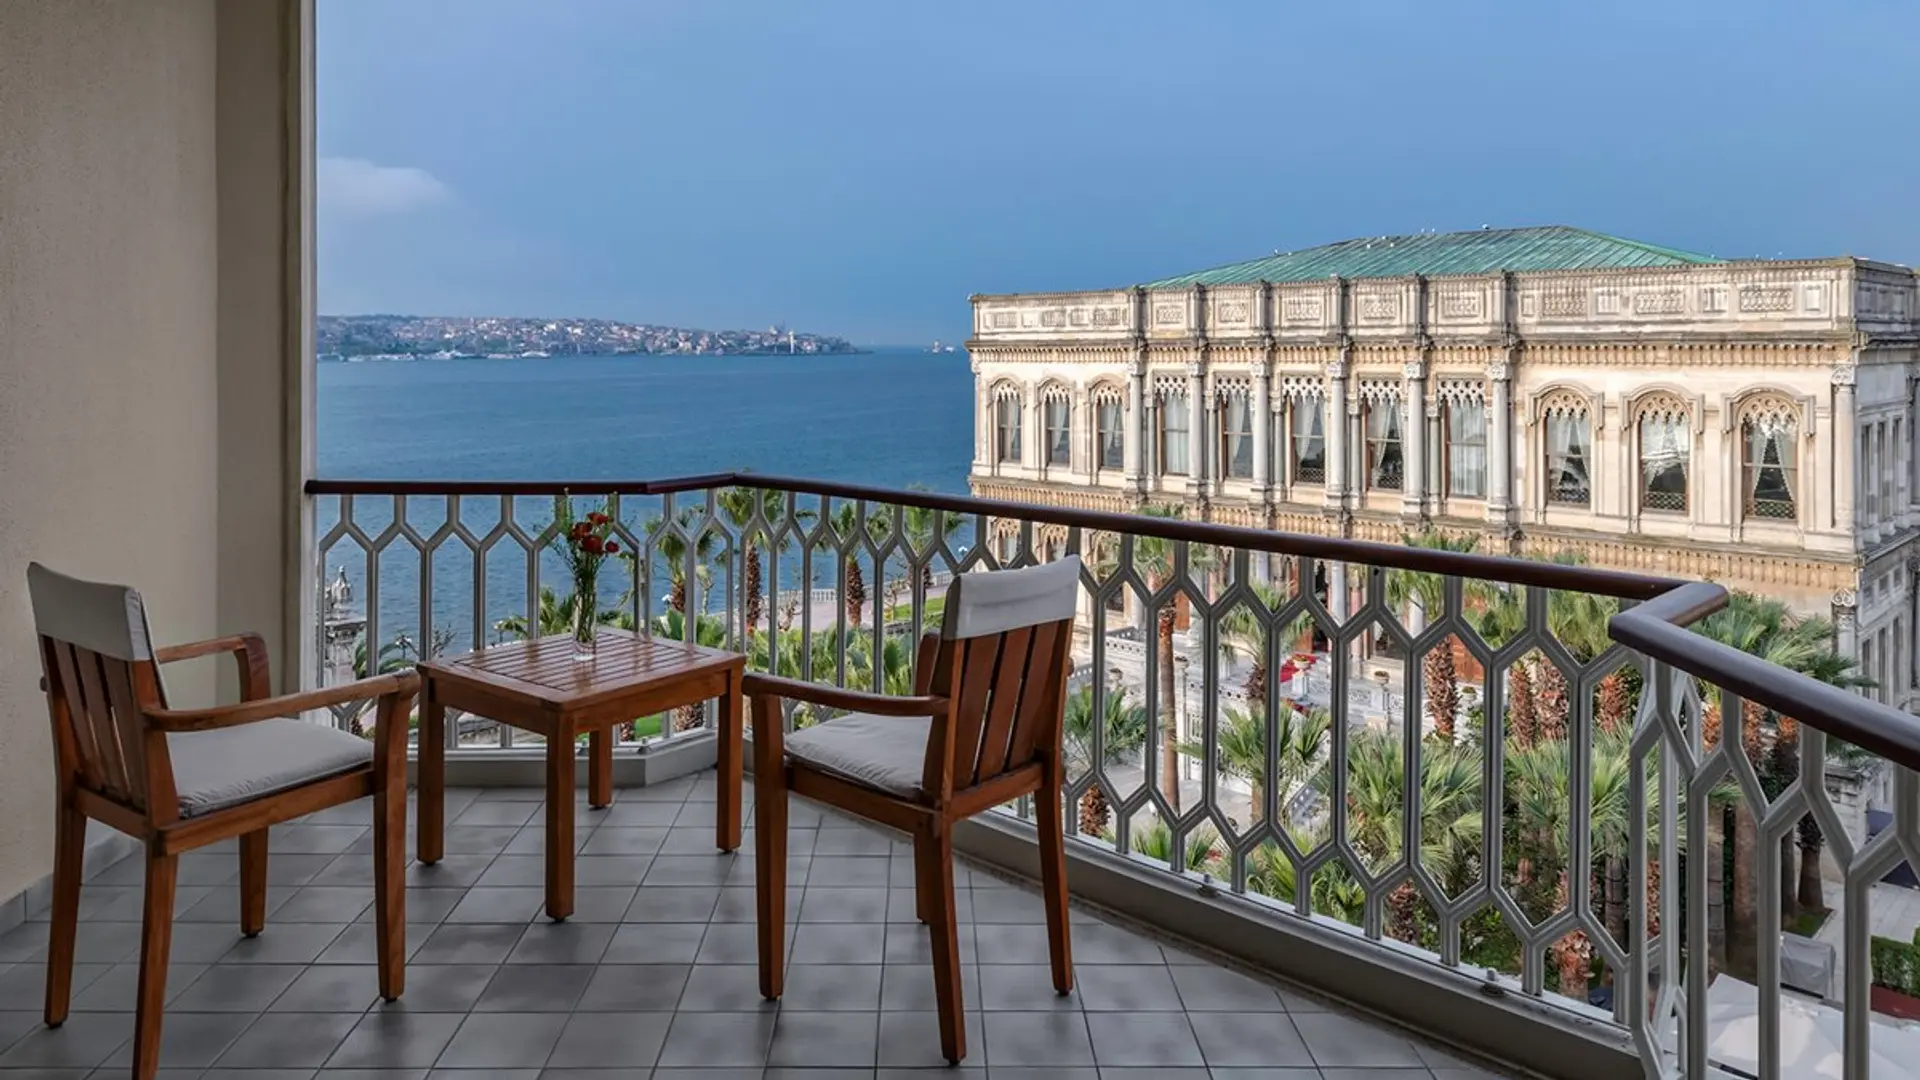 Hotel review Accommodation' - Çırağan Palace Kempinski Istanbul - 3